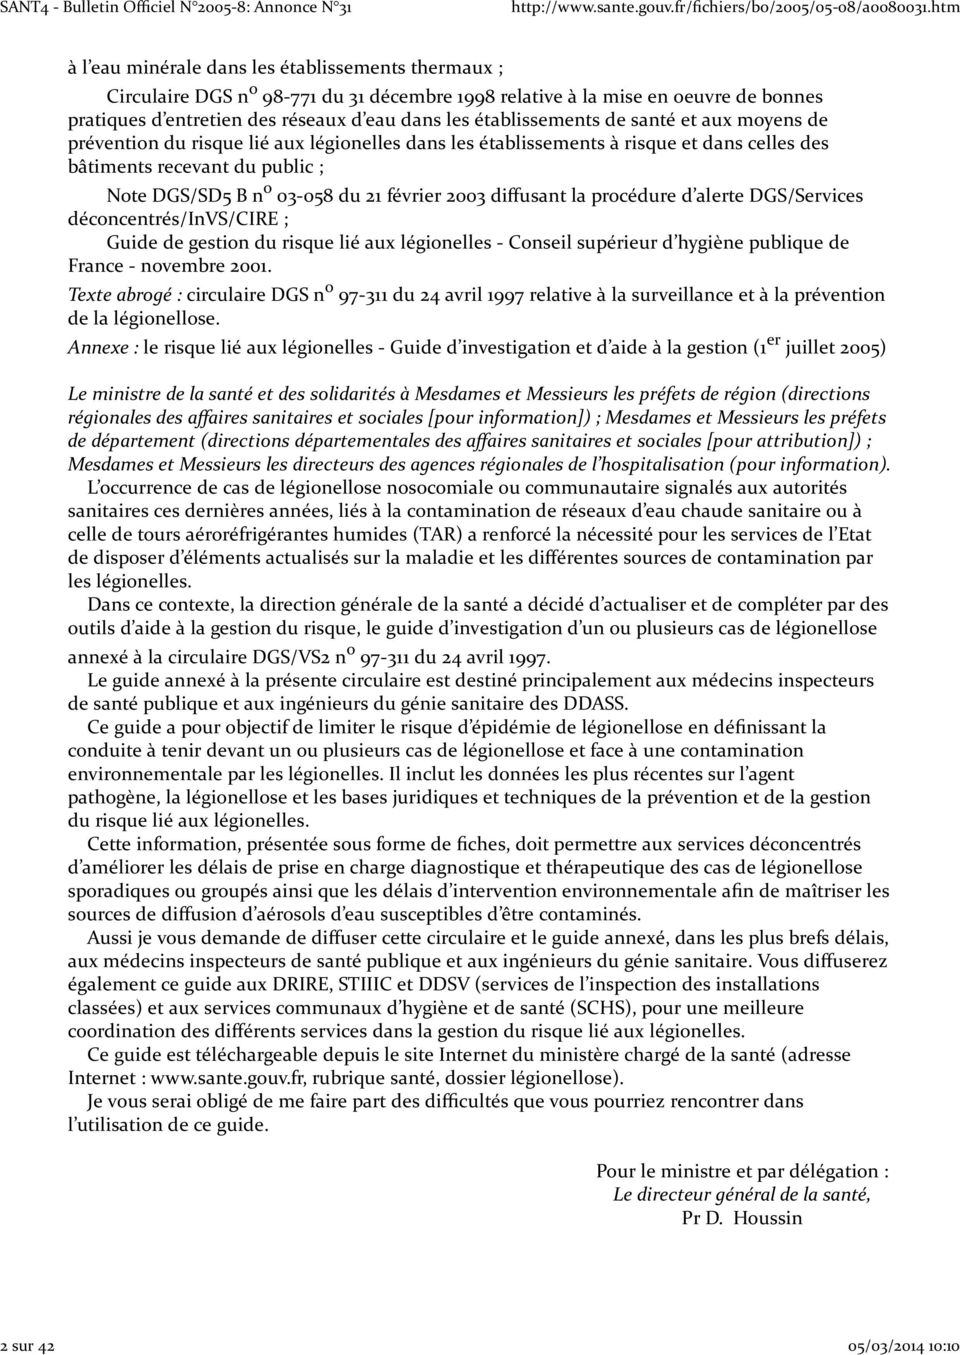 058 du 21 février 2003 diffusant la procédure d alerte DGS/Services déconcentrés/invs/cire ; Guide de gestion du risque lié aux légionelles Conseil supérieur d hygiène publique de France novembre